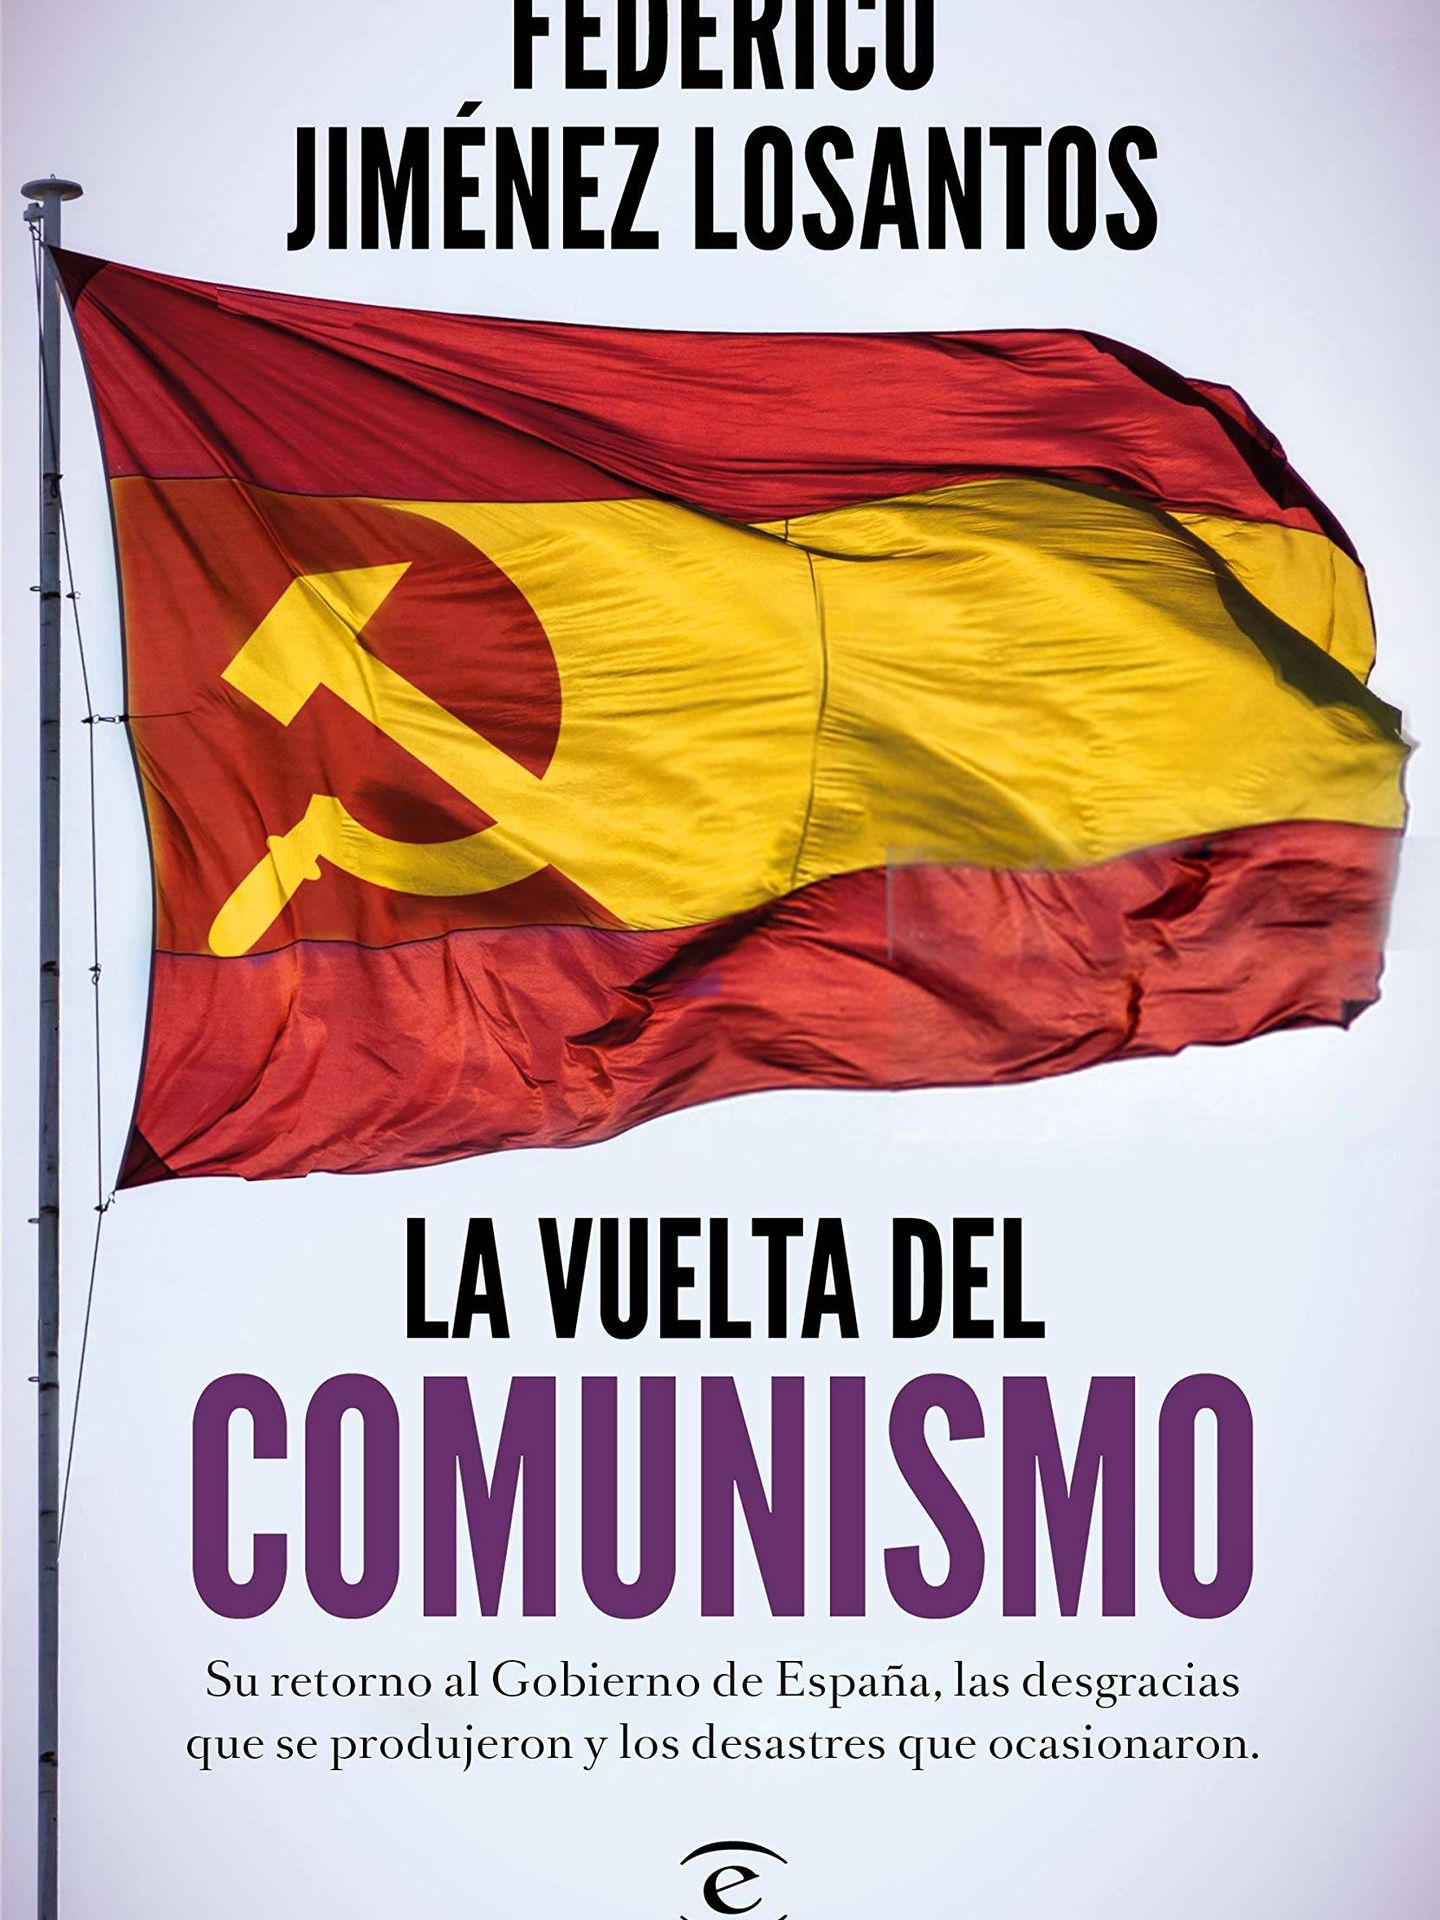 'La vuelta del comunismo'.